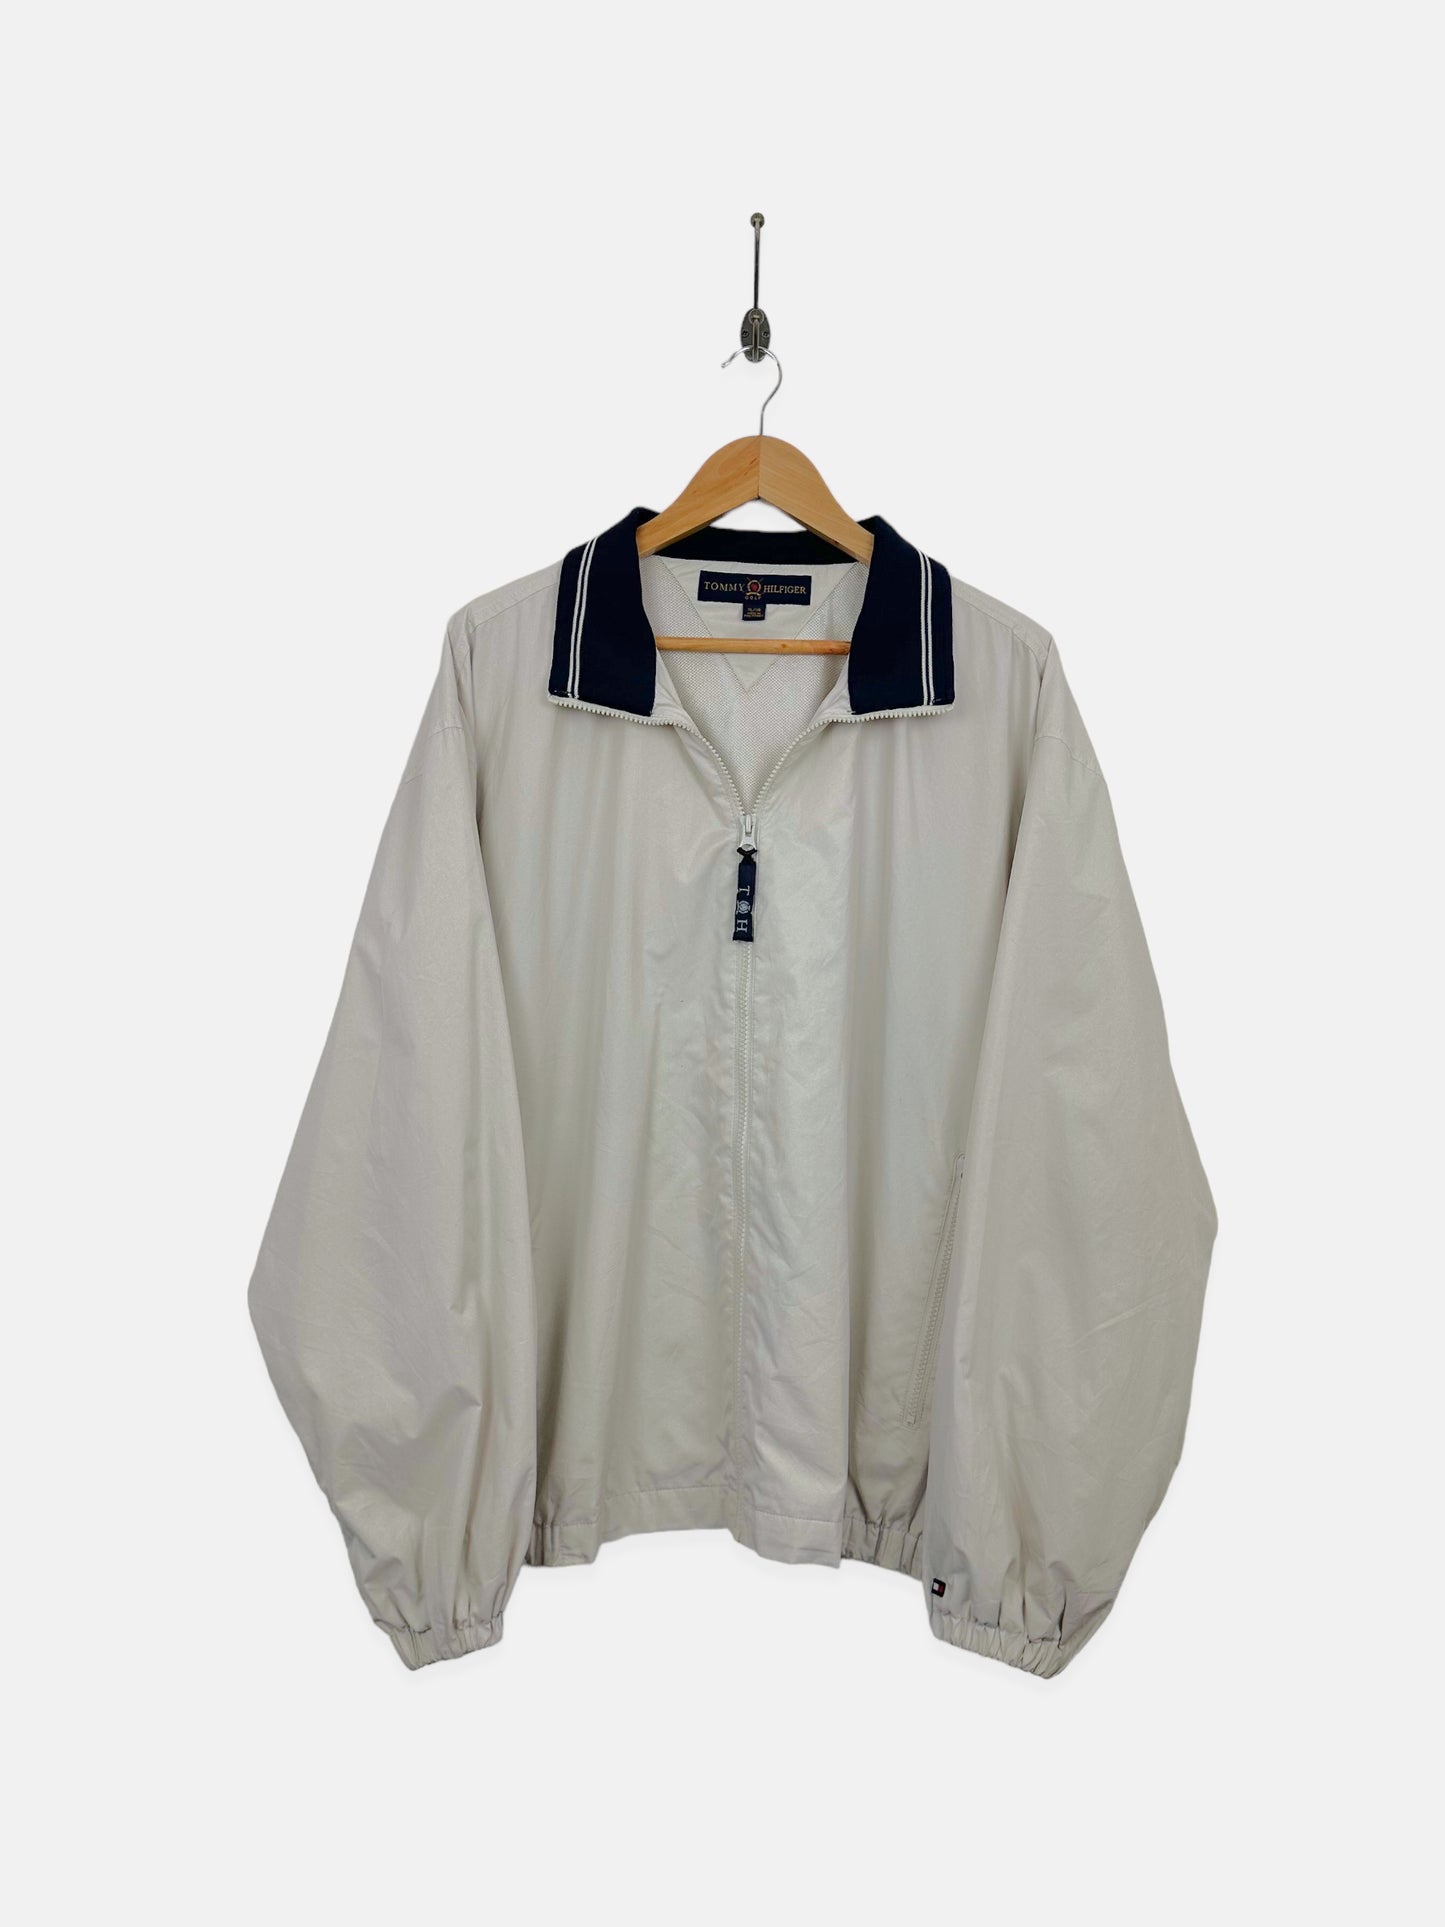 90's Tommy Hilfiger Embroidered Vintage Jacket Size XL